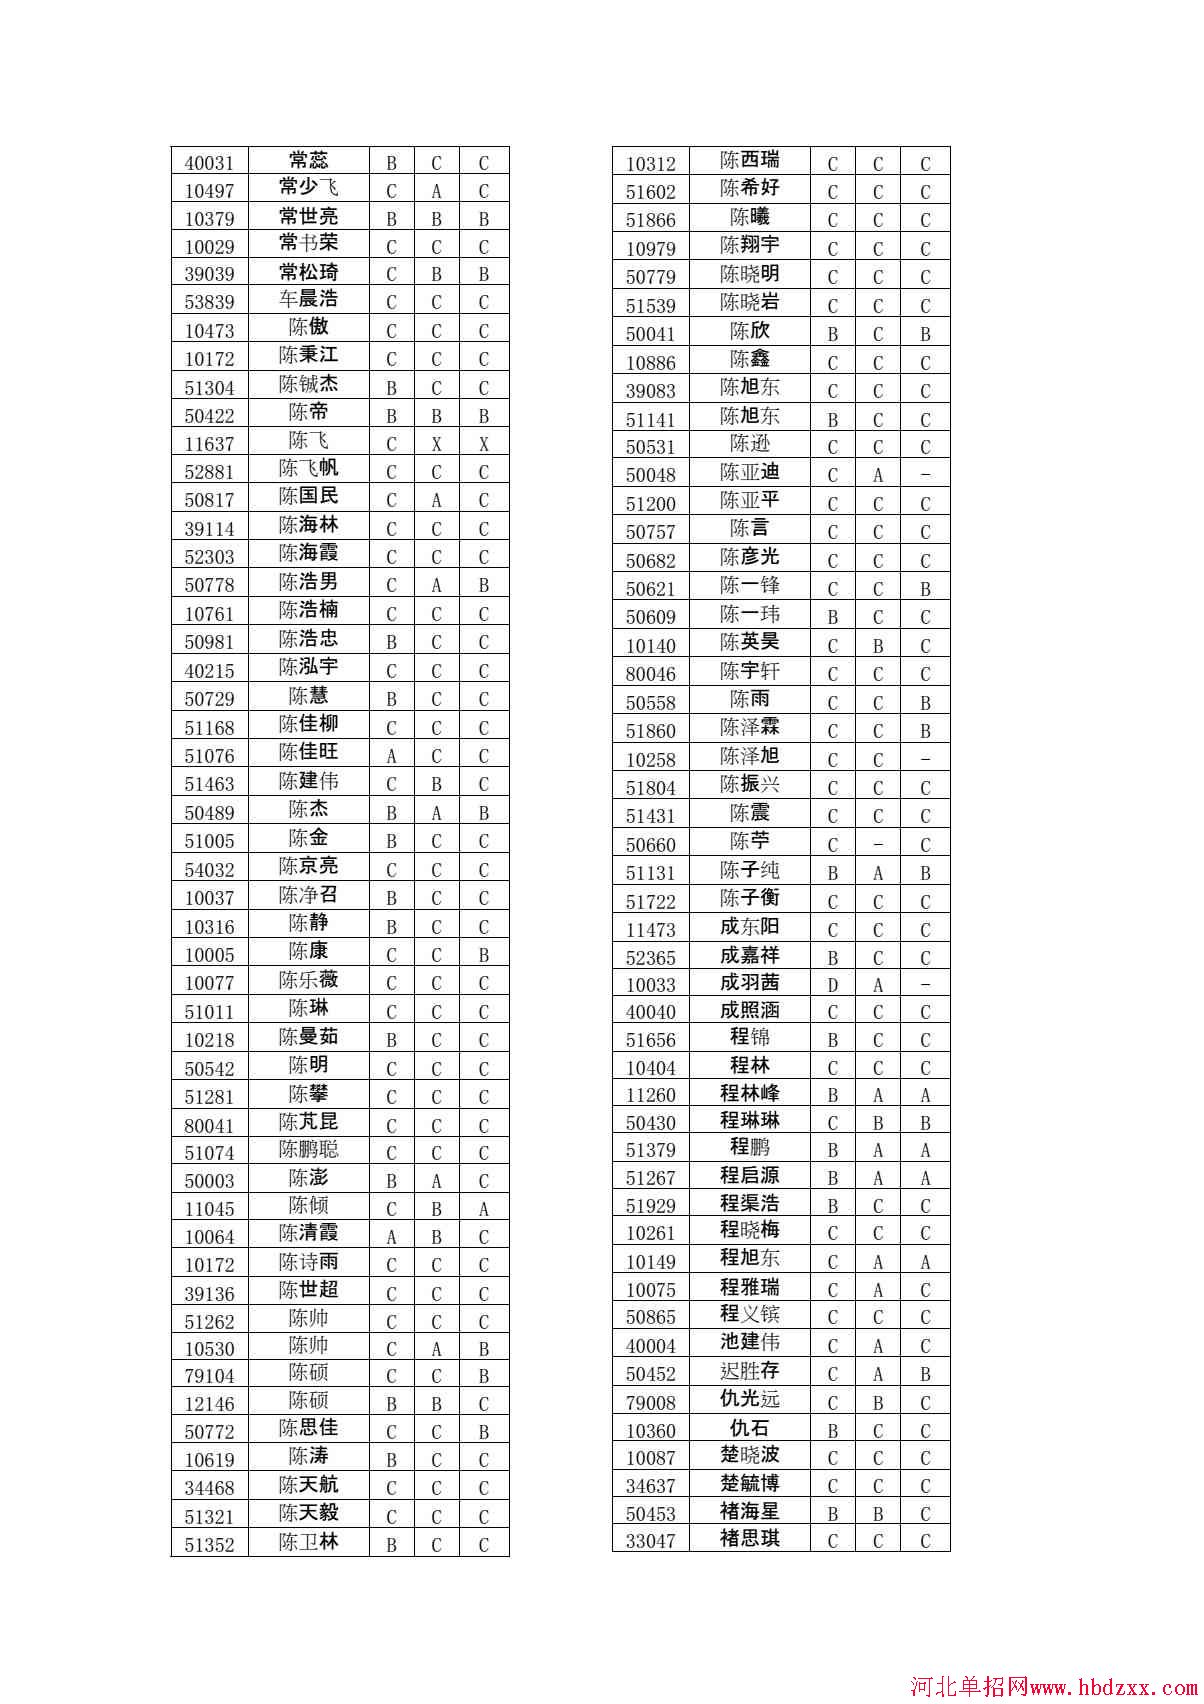 石家庄铁路职业技术学院2015年单独考试招生学问有免考资格考生名单 图1